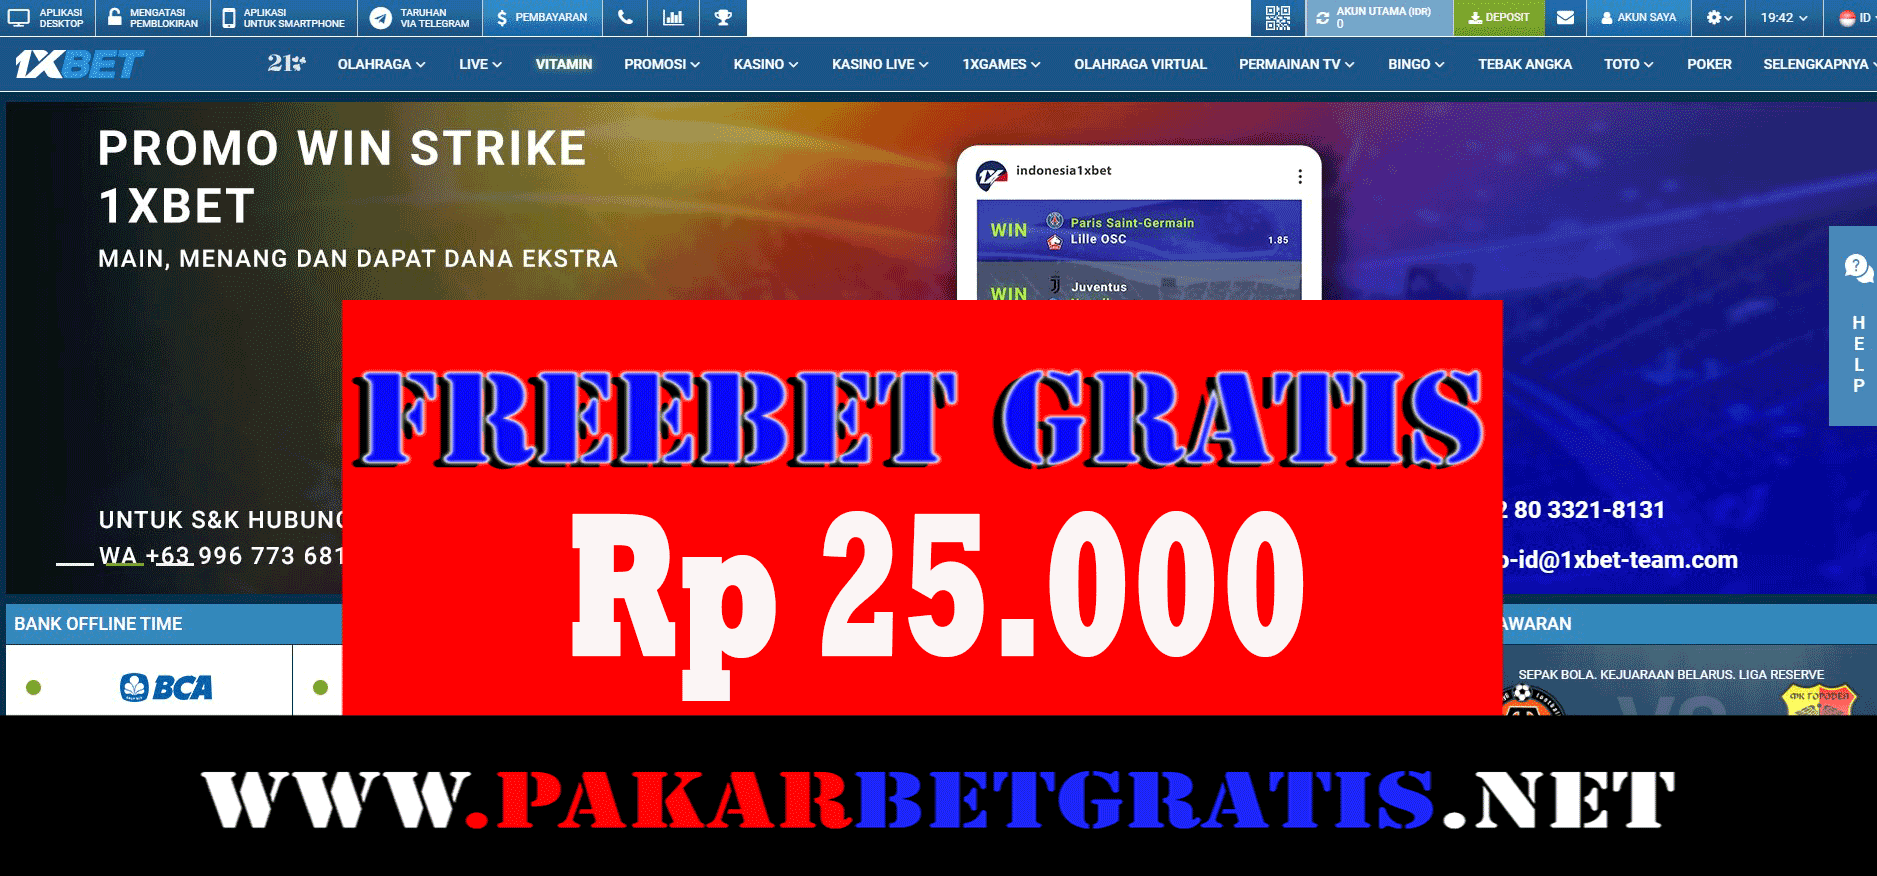 Freebet Gratis 1xbet Rp 25.000 Tanpa Deposit